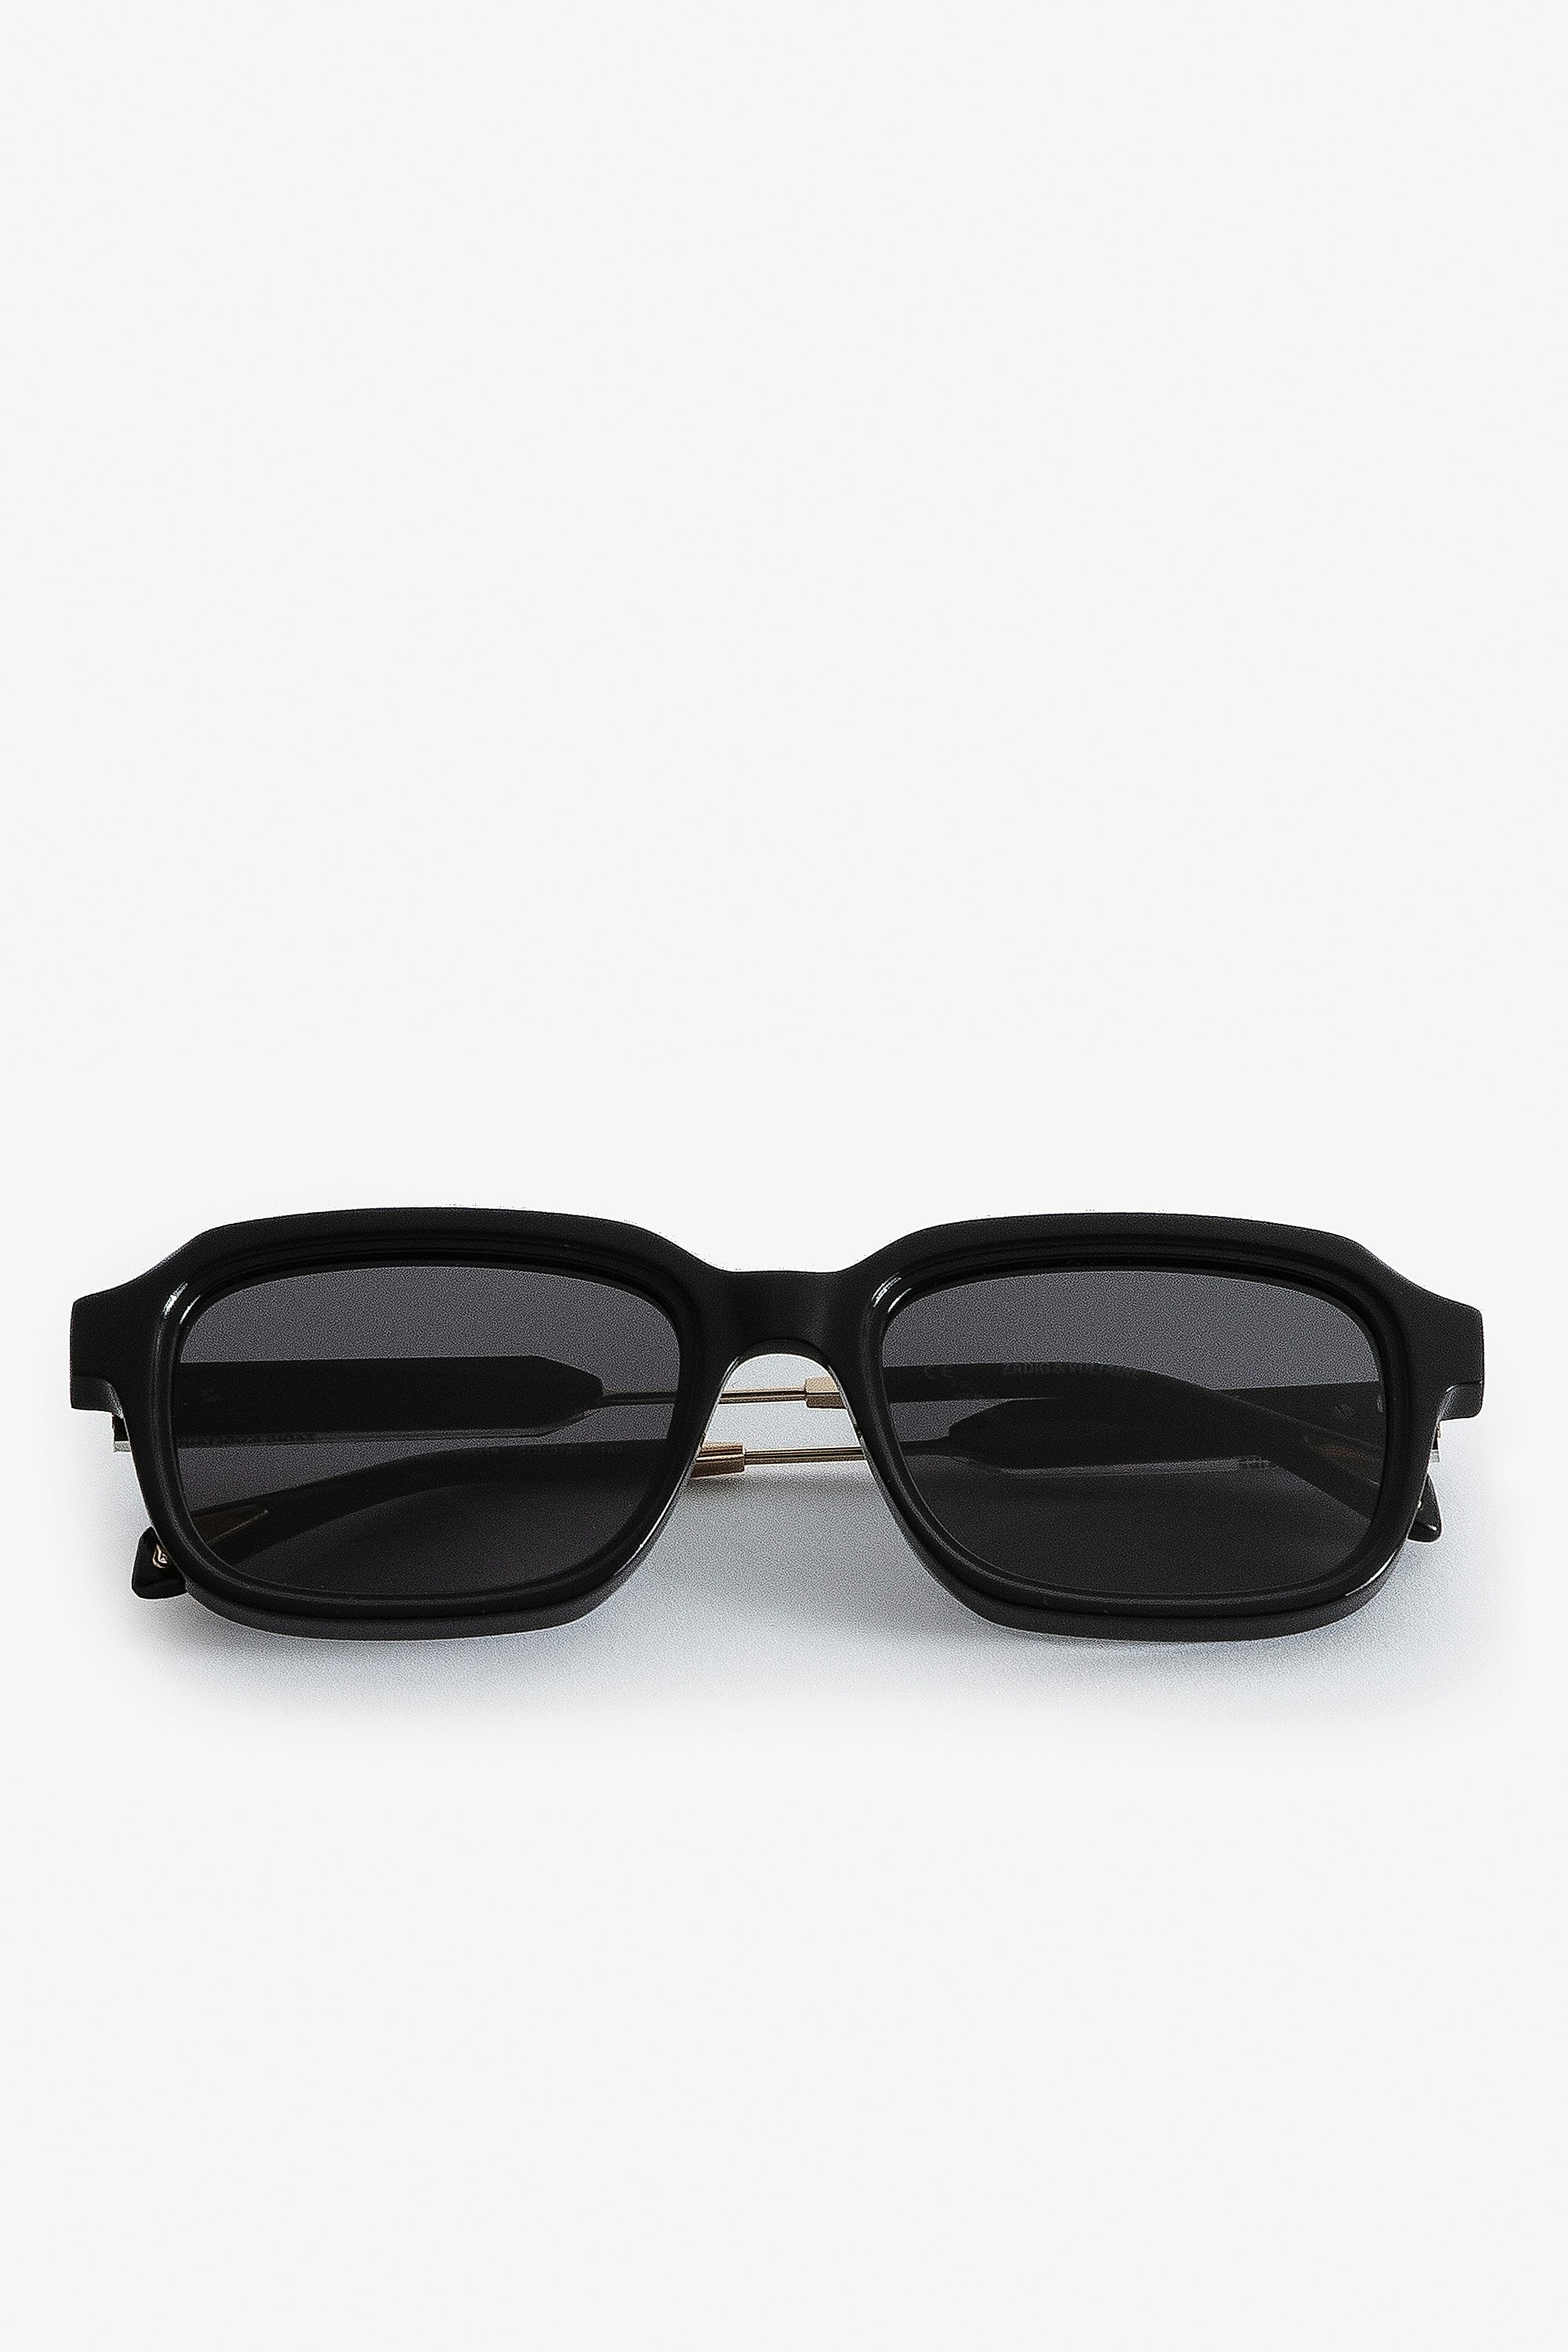 Squared ZV Sunglasses Square-shaped unisex sunglasses in black acetate.